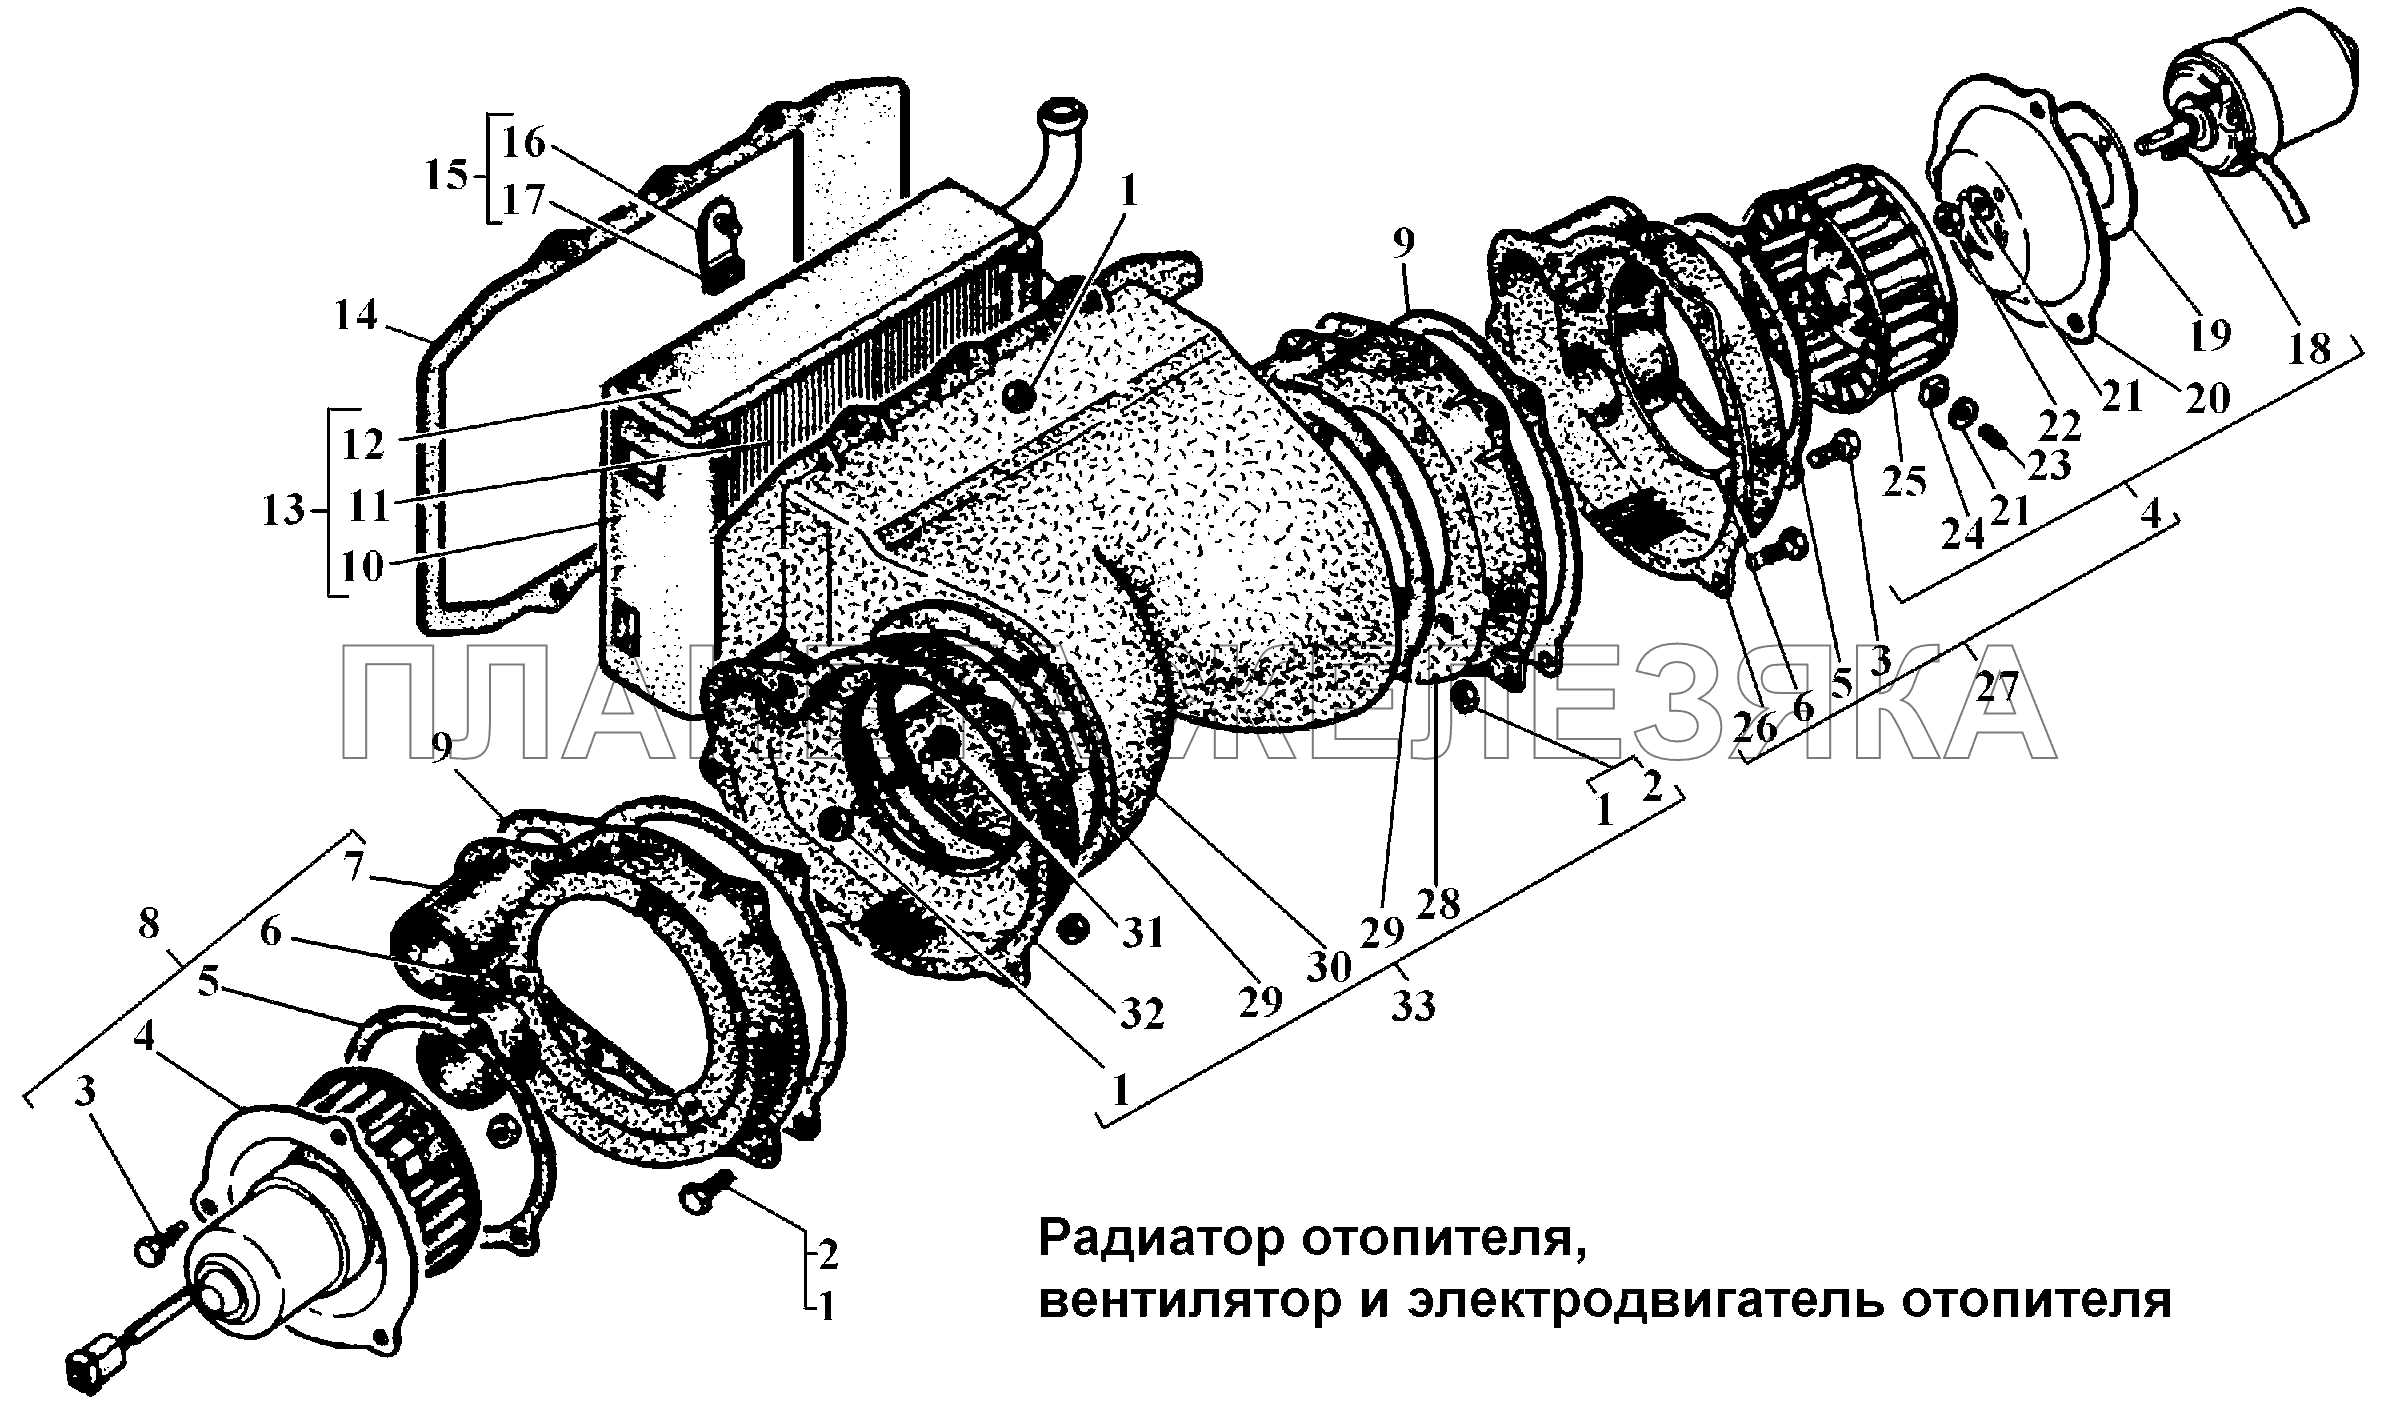 Радиатор отопителя, вентилятор и электродвигатель отопителя ГАЗ-3308